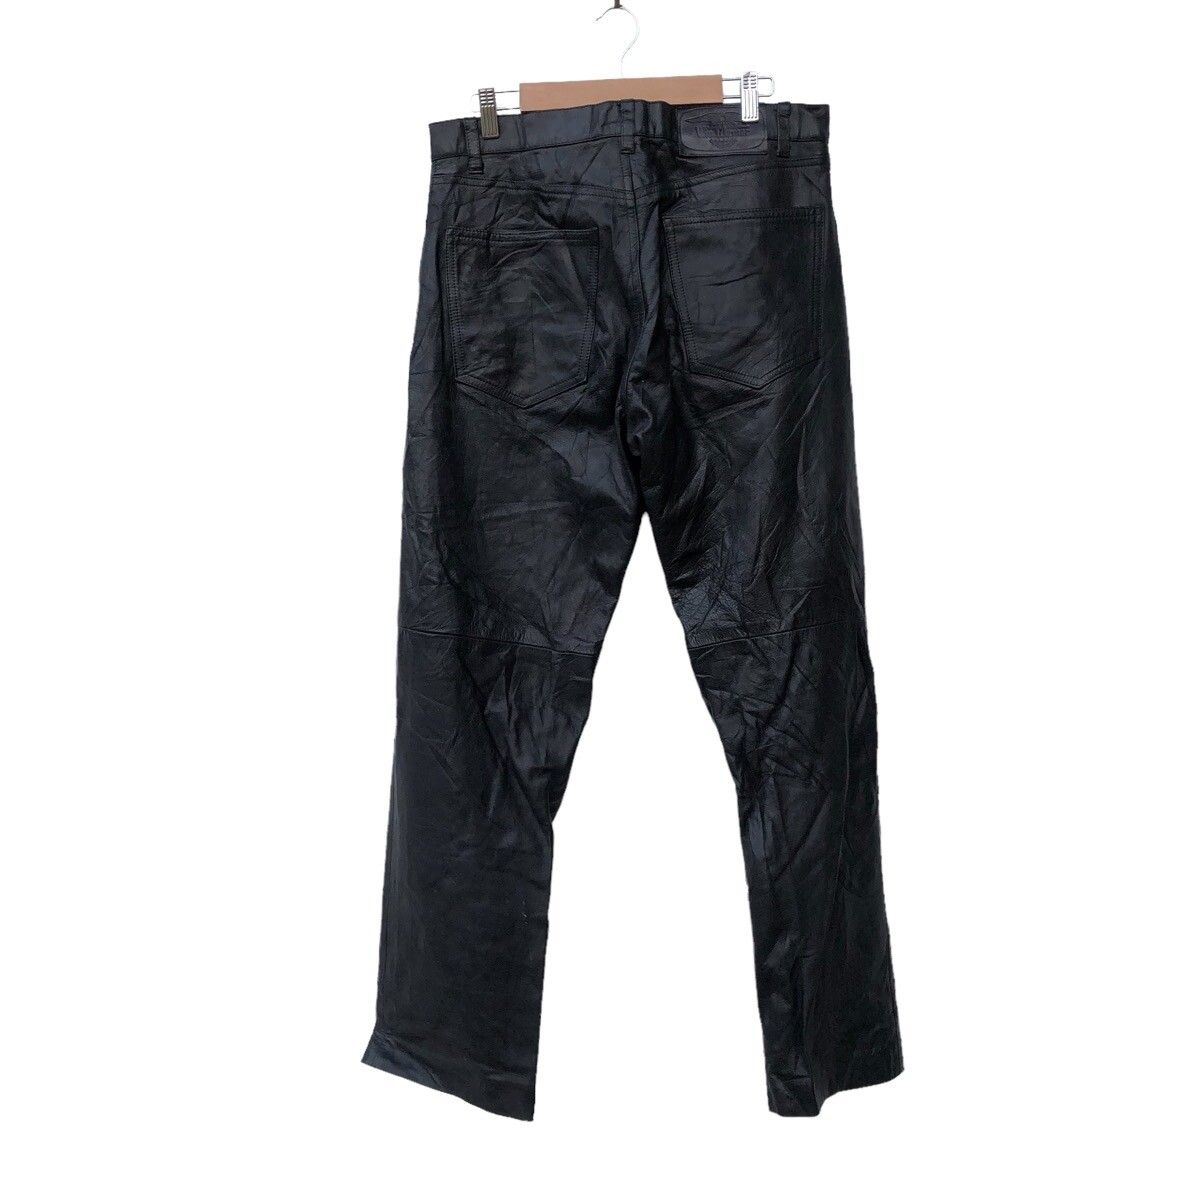 🫴🏻Vintage Wind Armor Leather Pants Jacket - 2